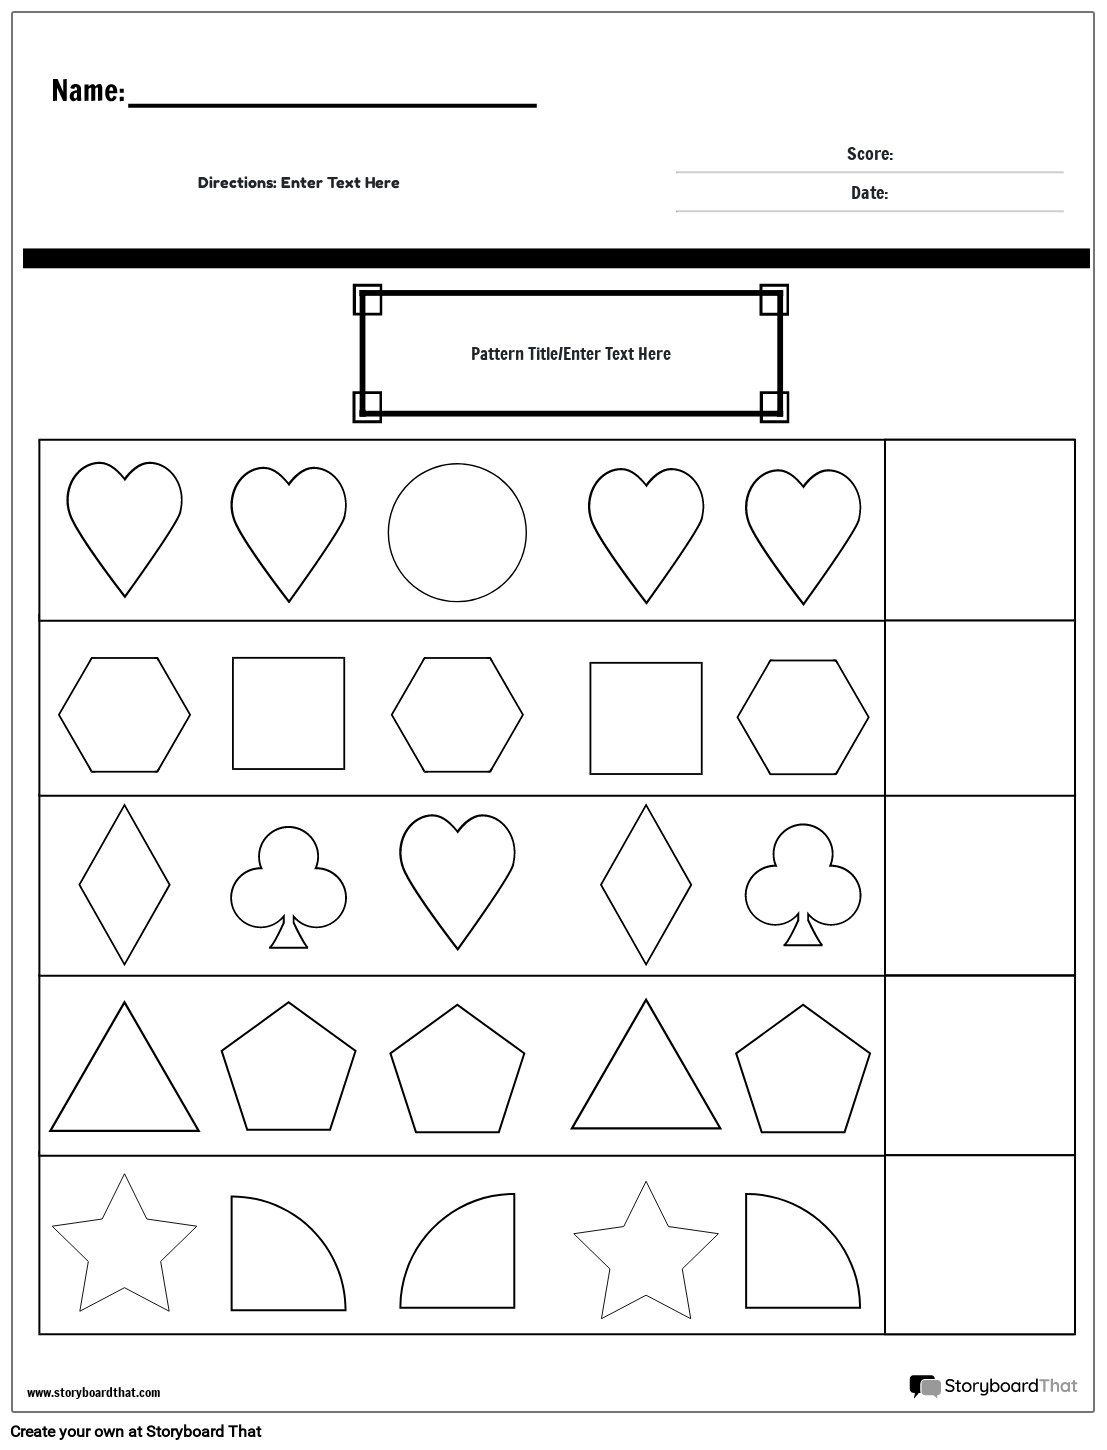 Shapes complete pattern worksheet (black & white)